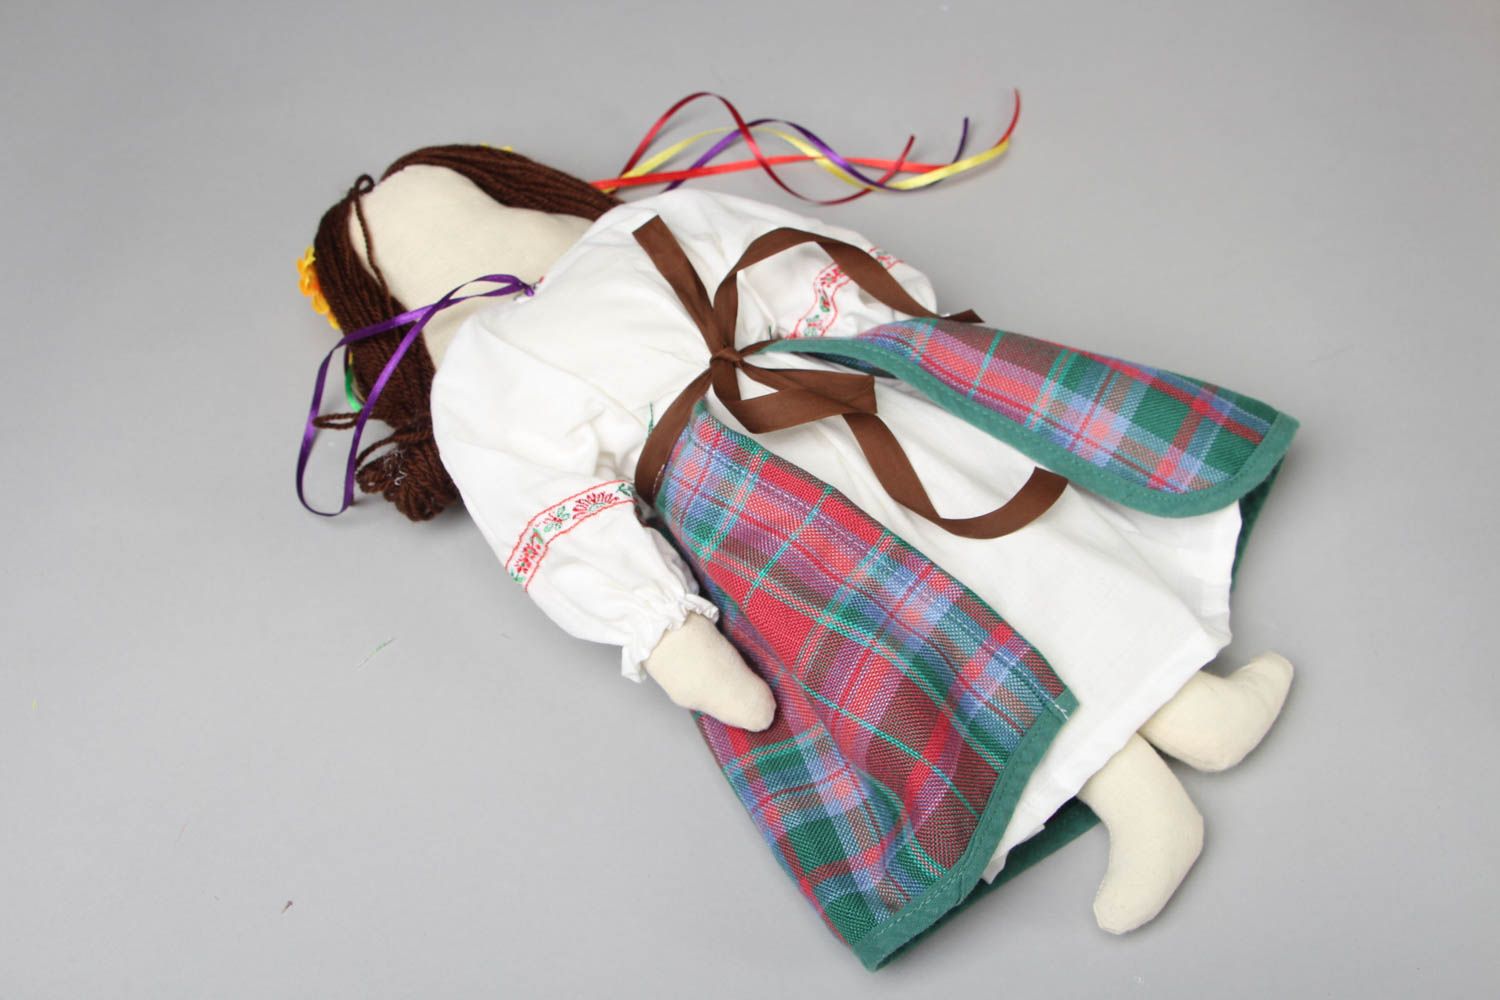 Textil Puppe mit Kranz foto 3